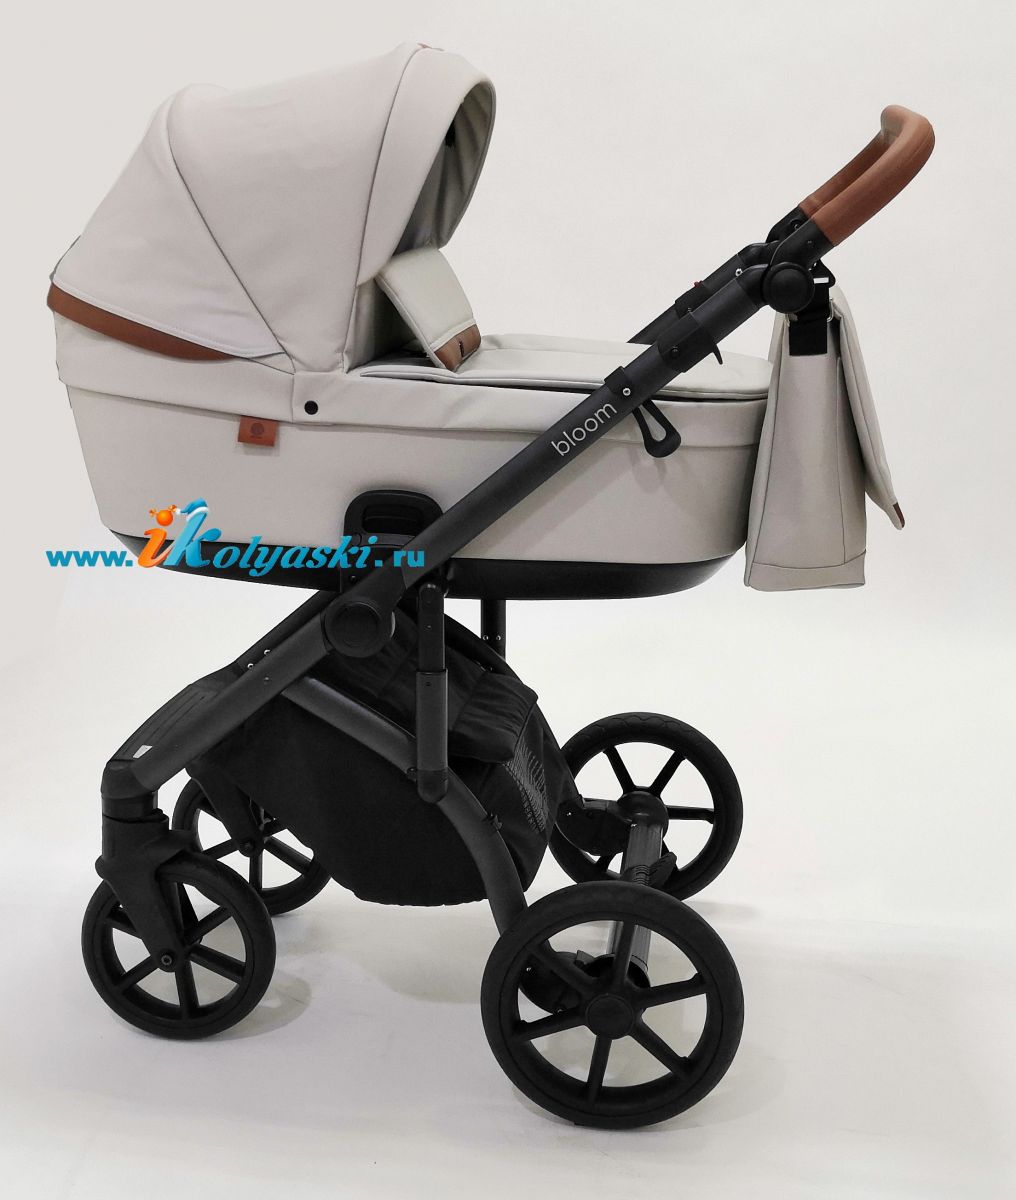 Roan Bloom 3 в 1 детская коляска для новорожденного на гелиевых бескамерных поворотных колесах с прогулочным блоком и автокреслом - купить в интернет-магазине в Москве с доставкой по РФ - цвет  Island Stone